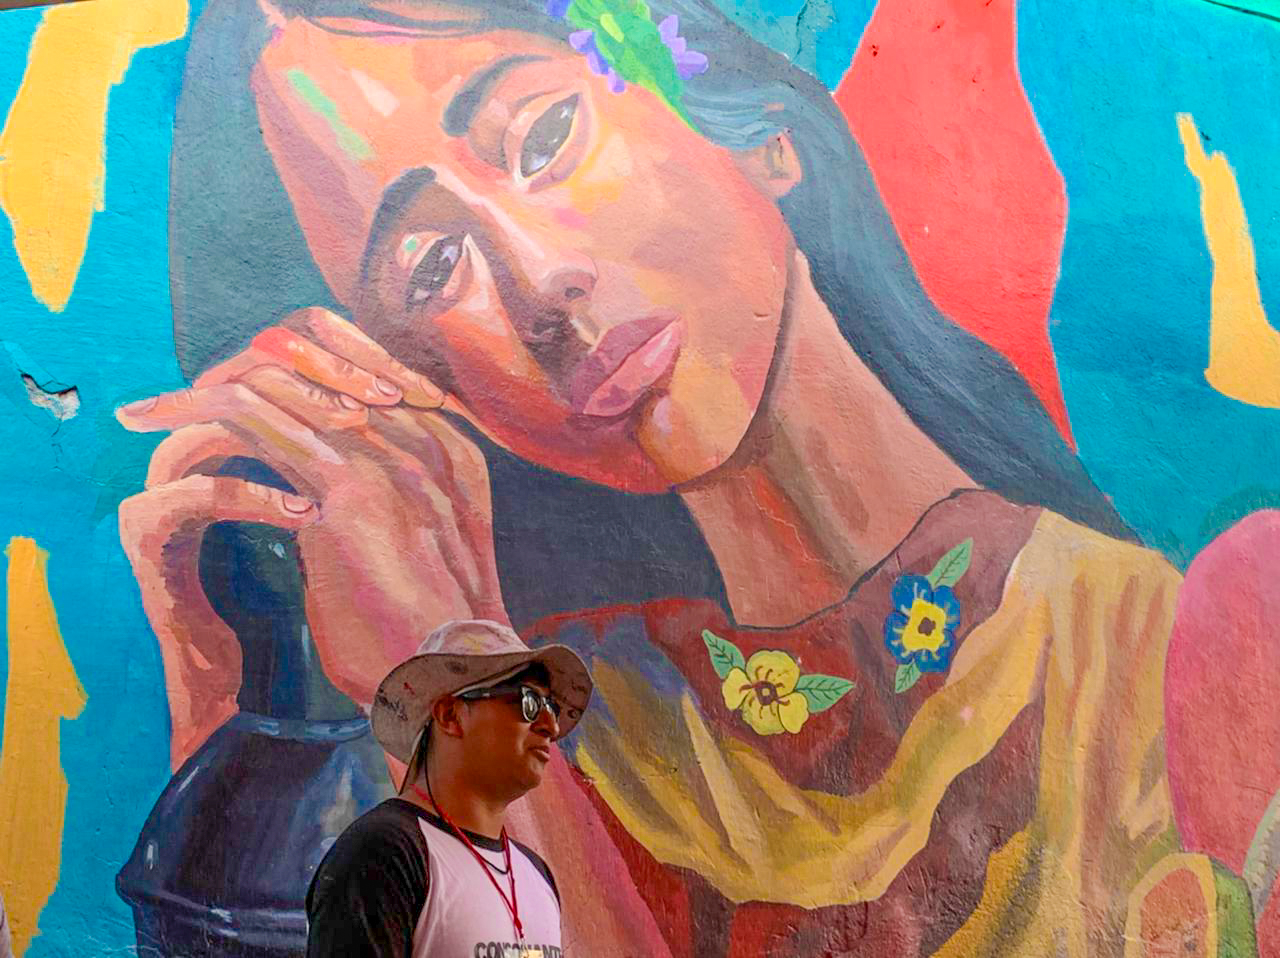 En Chietla inauguran murales que refleja su cultura